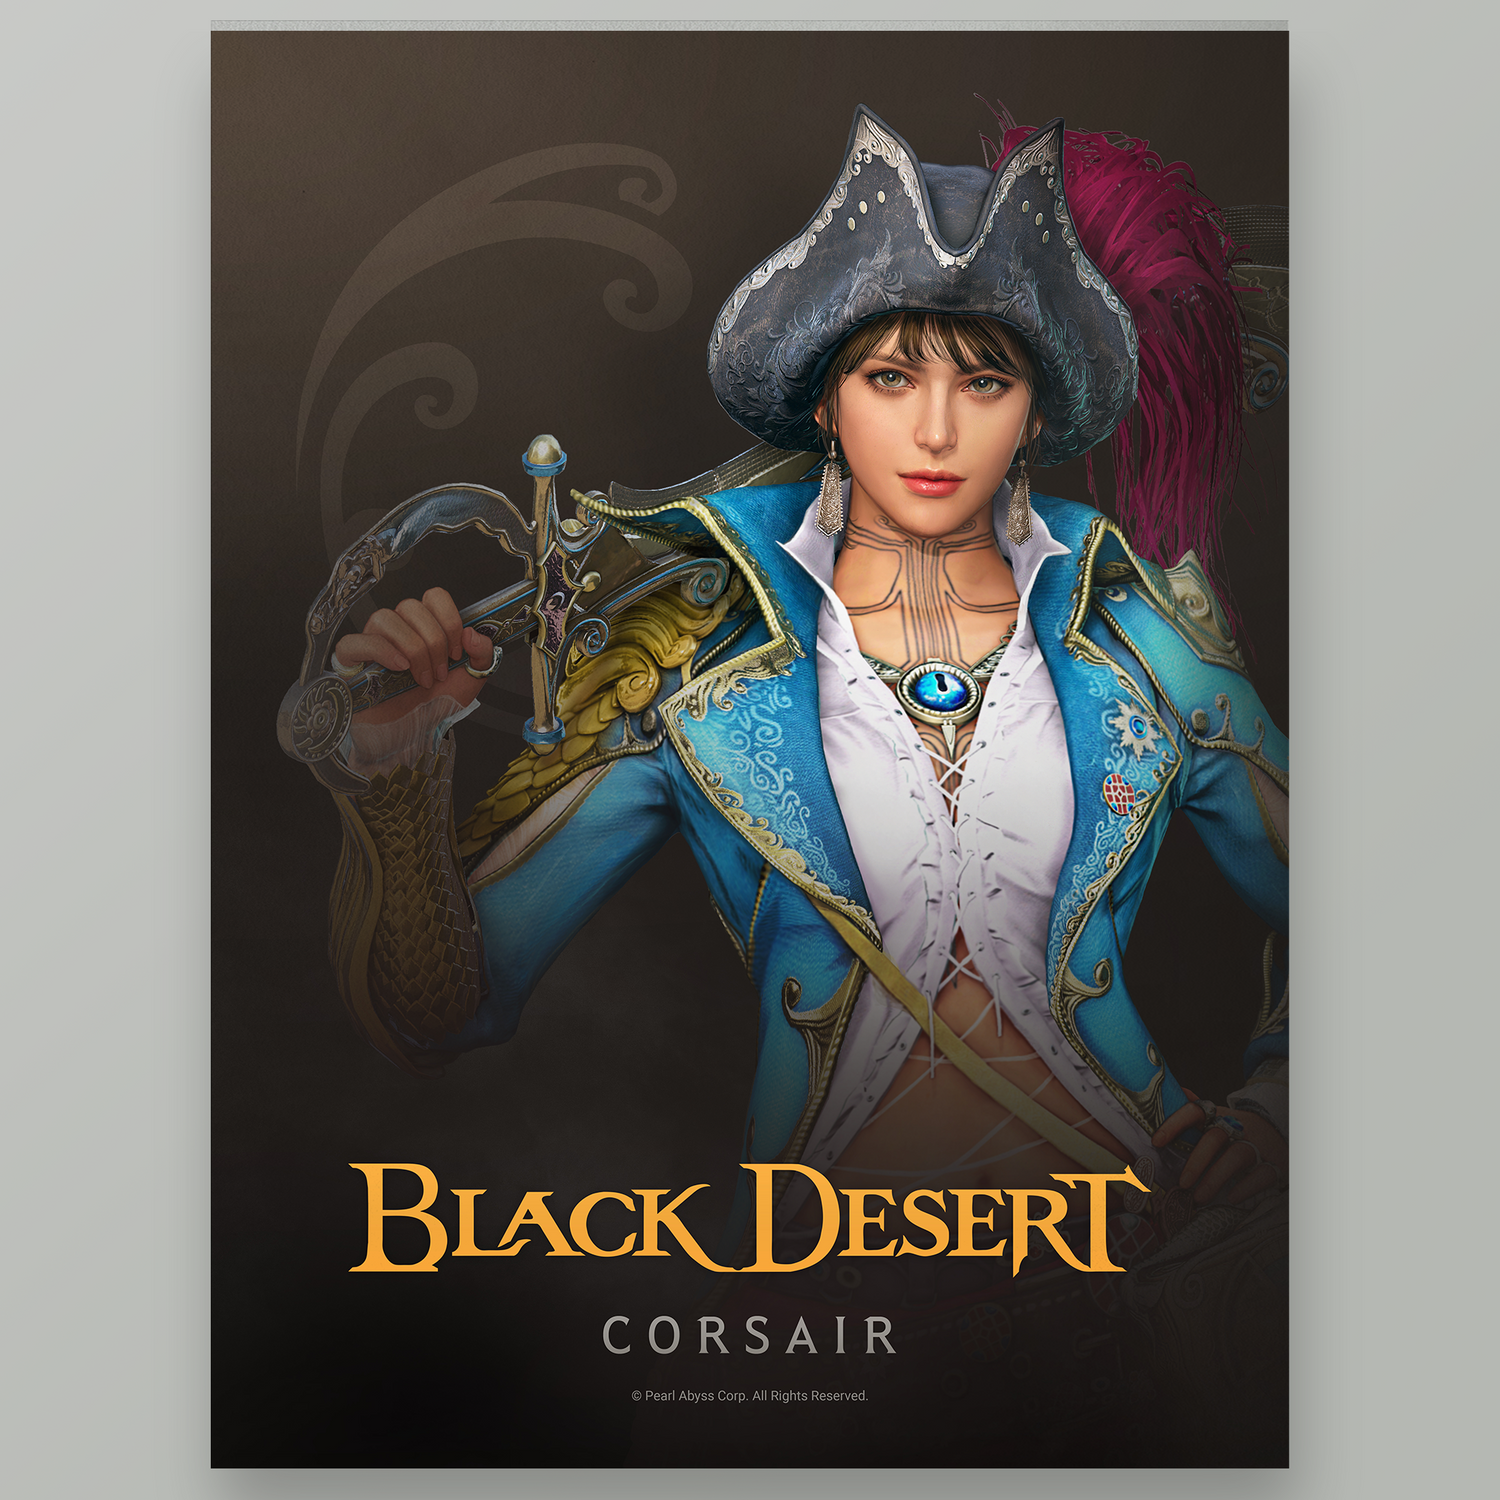 Black Desert Corsair Poster